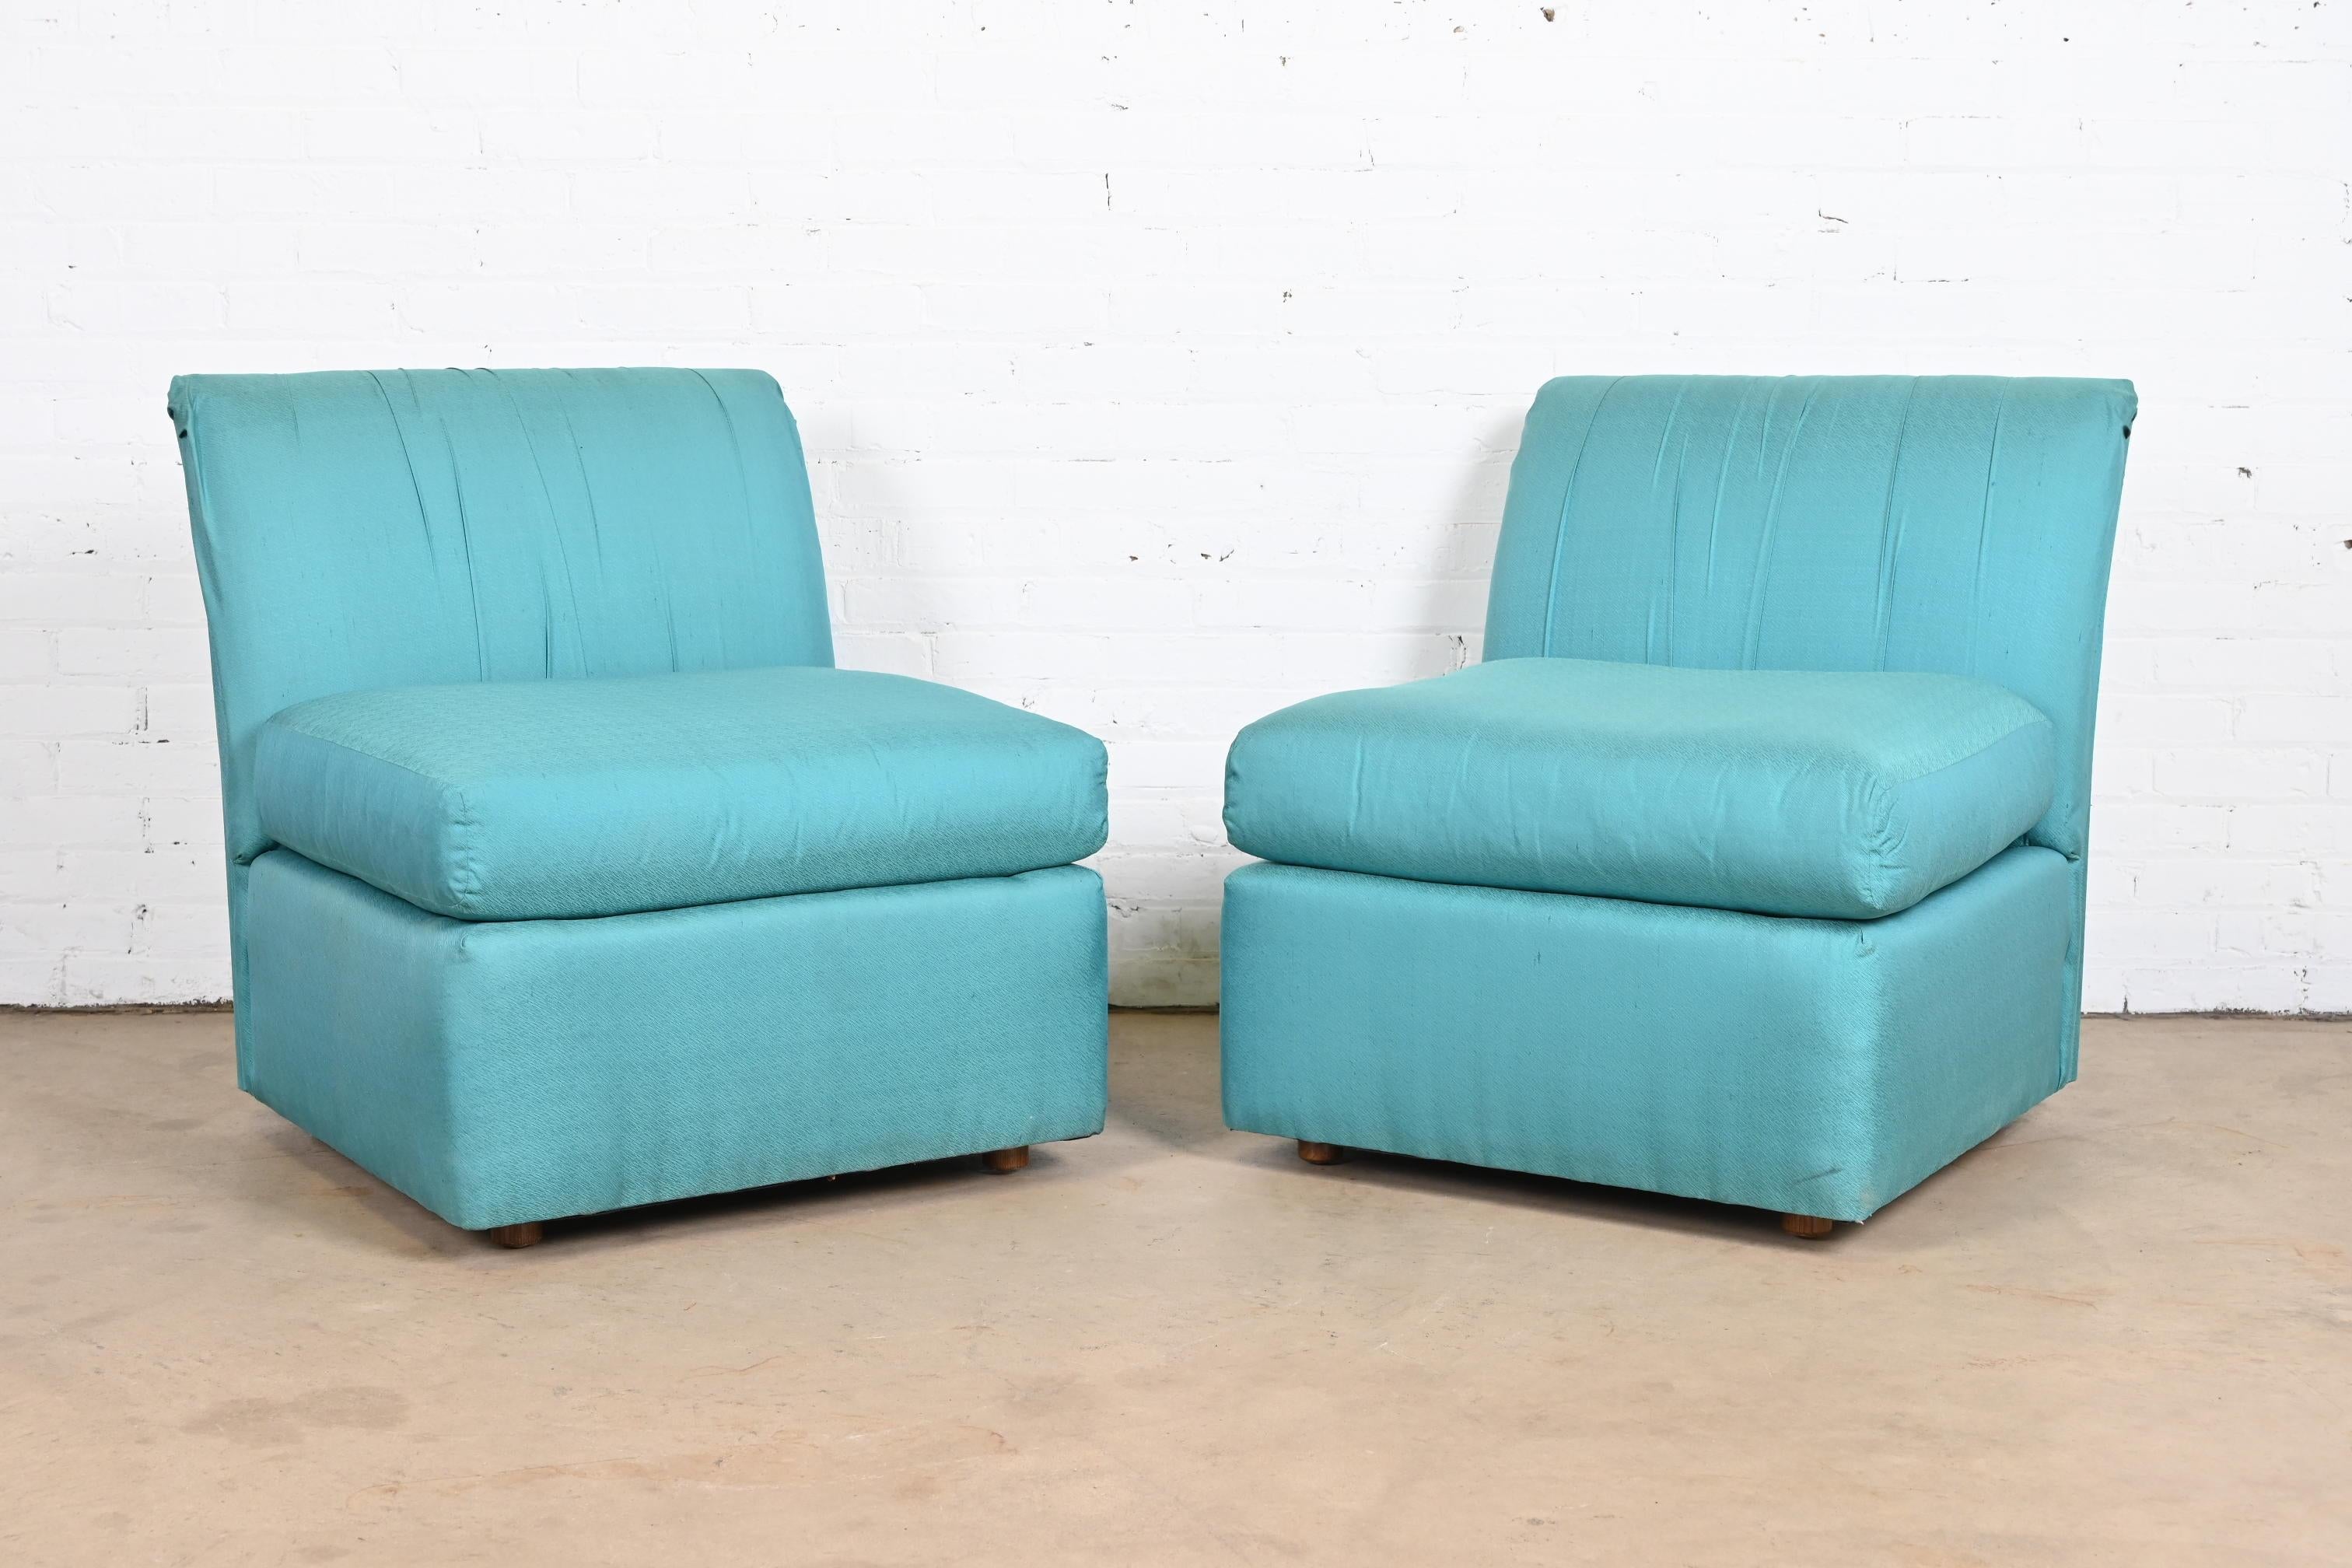 Une superbe paire de fauteuils en soie sans accoudoirs ou de chaises de salon modernes avec une tapisserie d'origine en soie turquoise.

Par Baker Furniture.

USA, vers les années 1970.

Mesures : 28